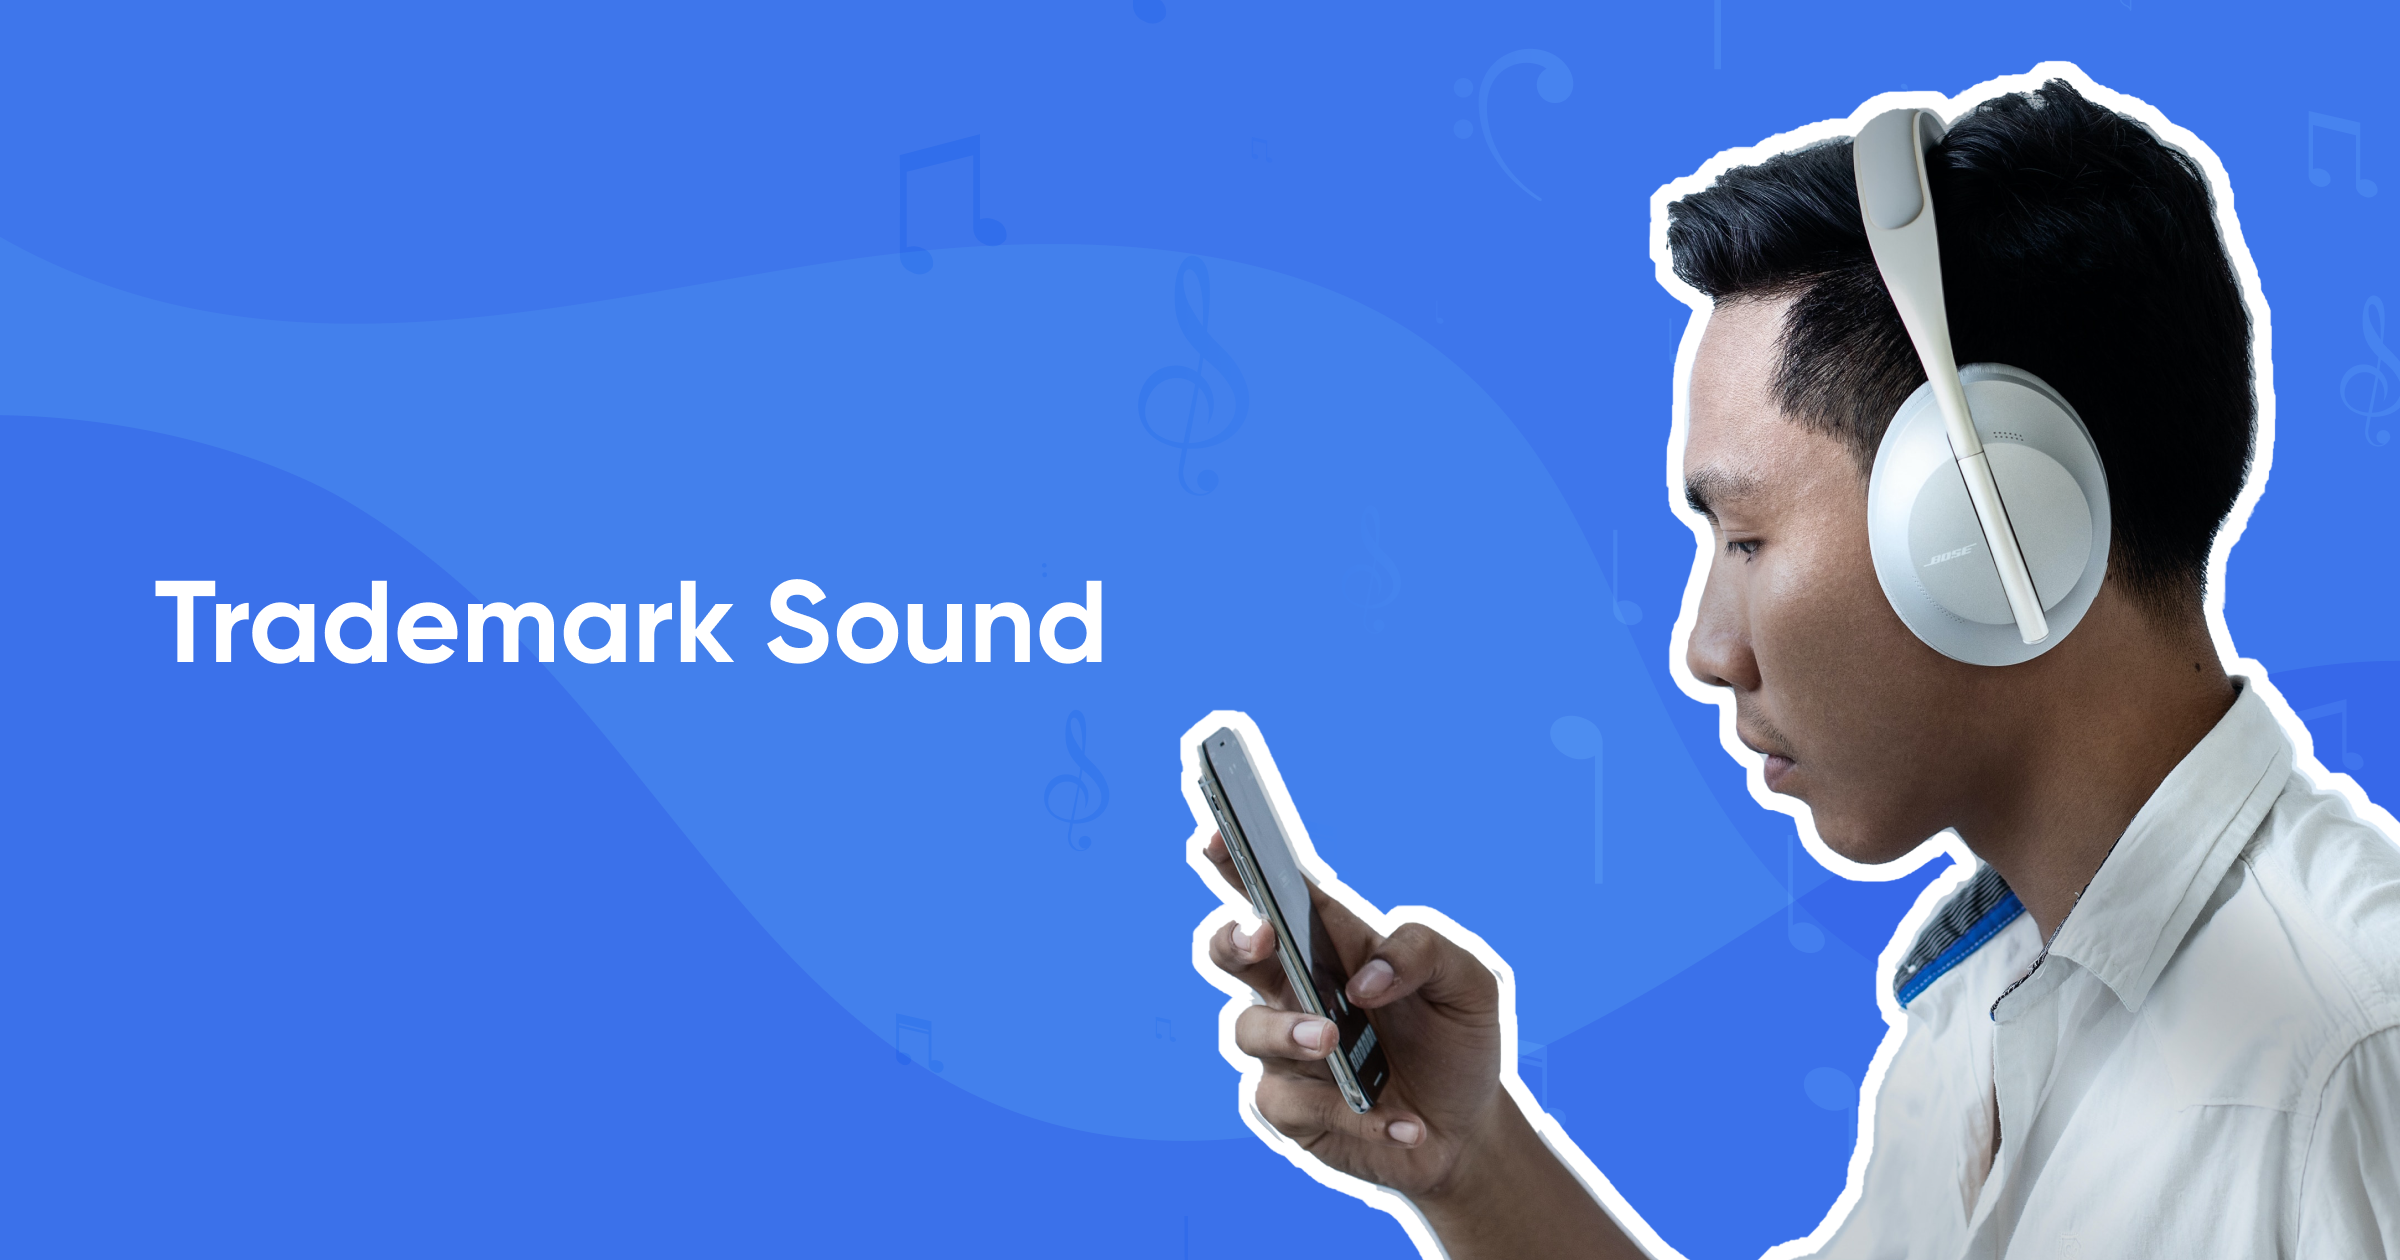 Trademark sound 